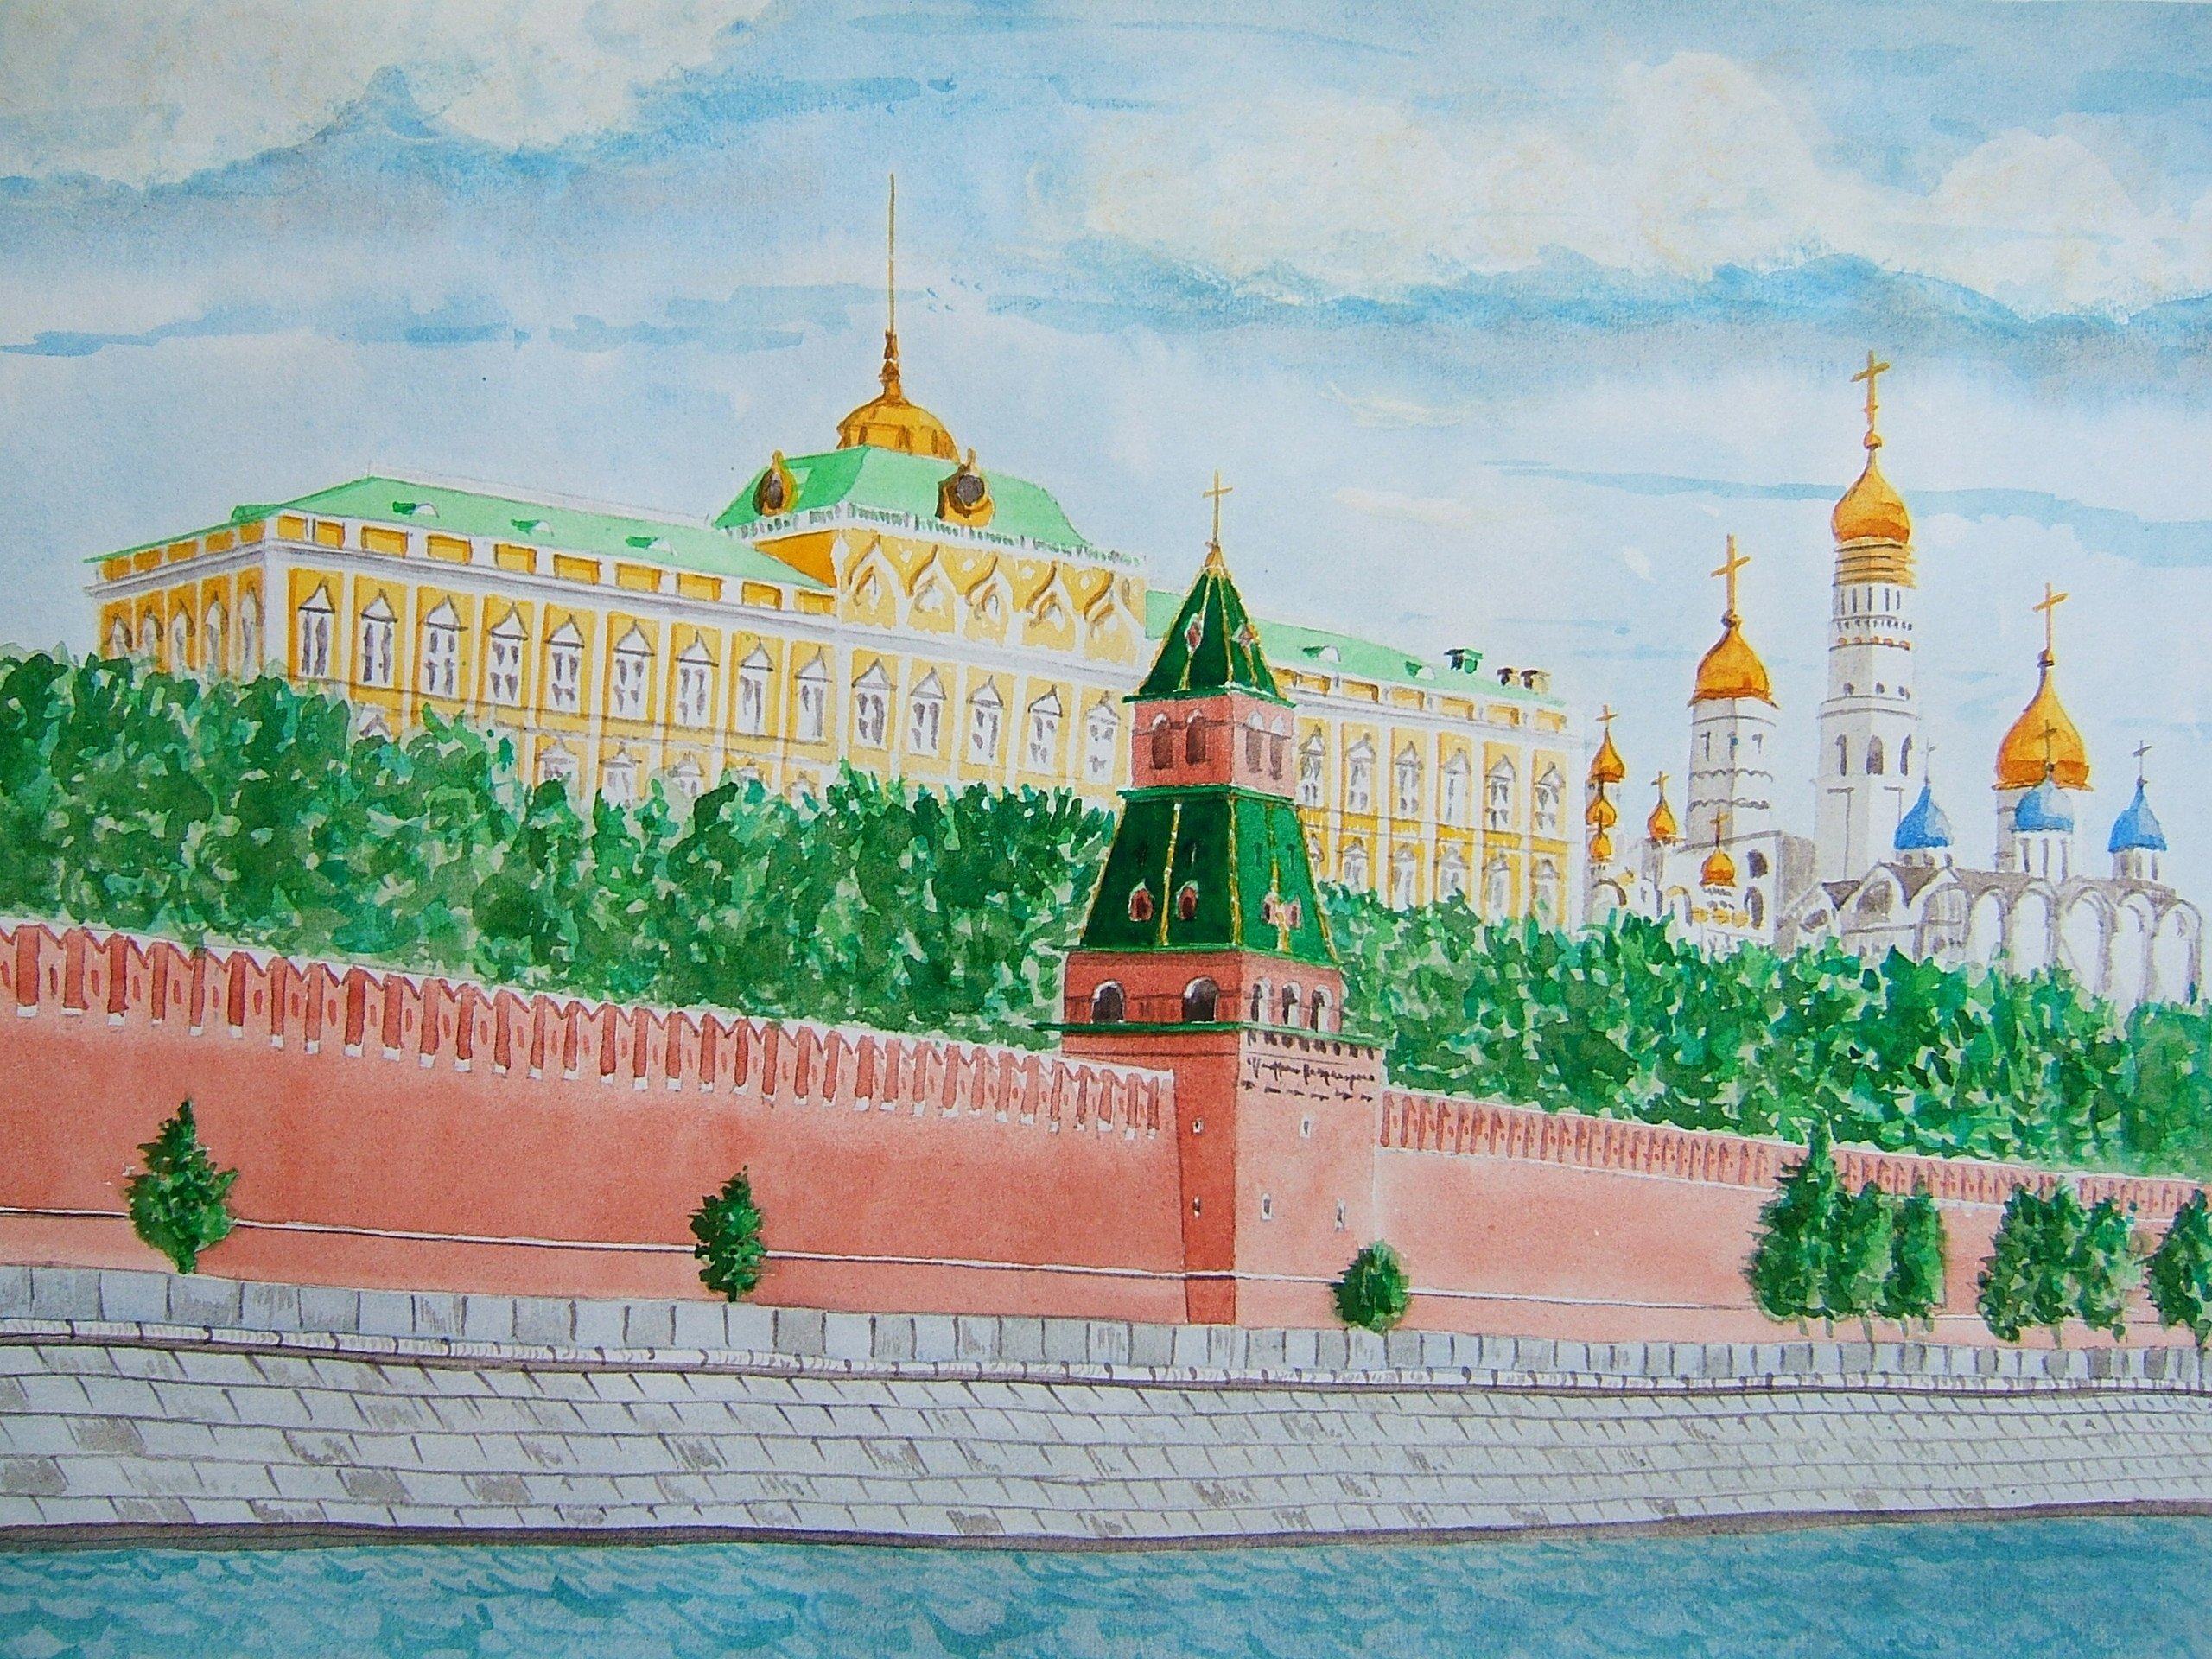 Московский кремль 6 класс